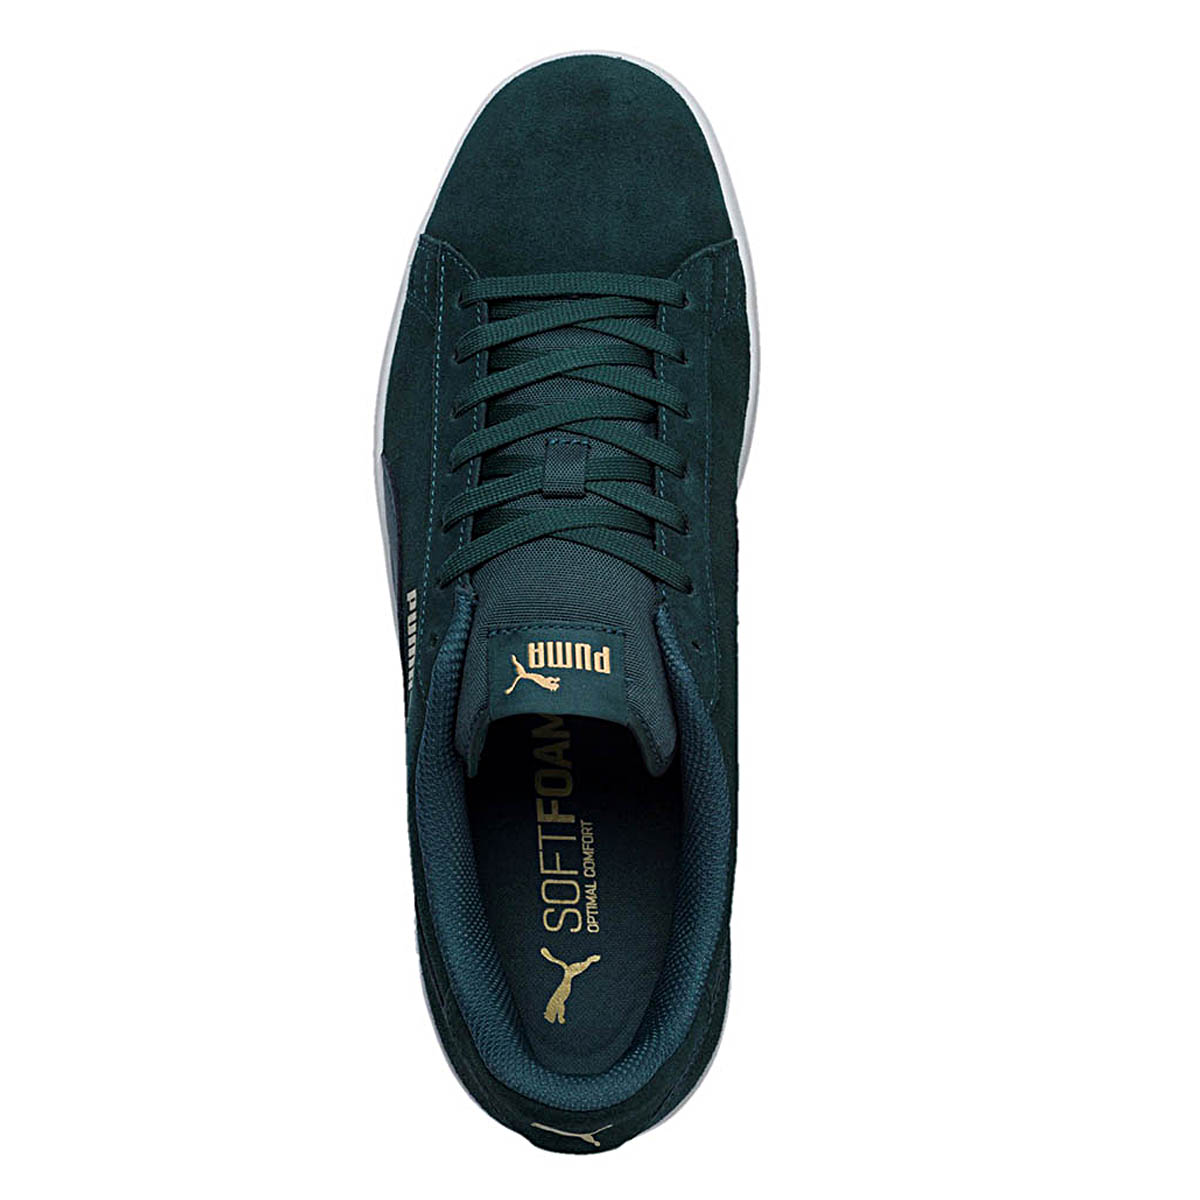 Puma Smash v2 Unisex Sneaker Schuh grün 364989 26